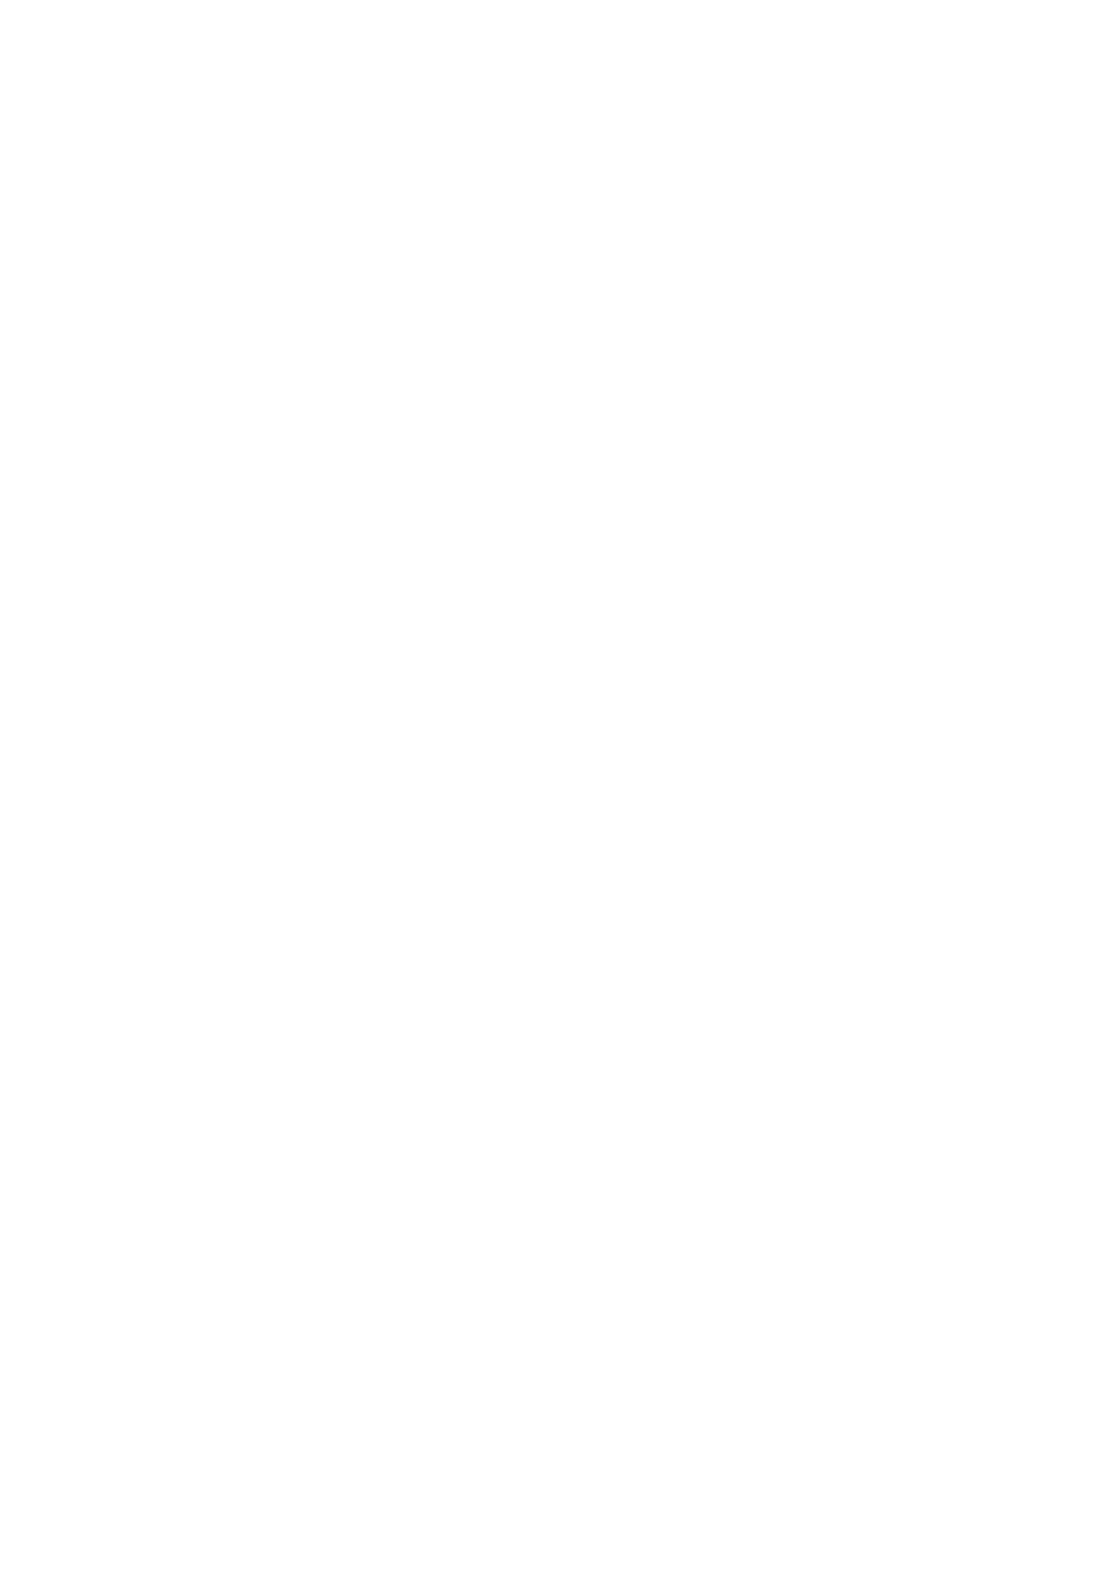 Computershare logo pour fonds sombres (PNG transparent)